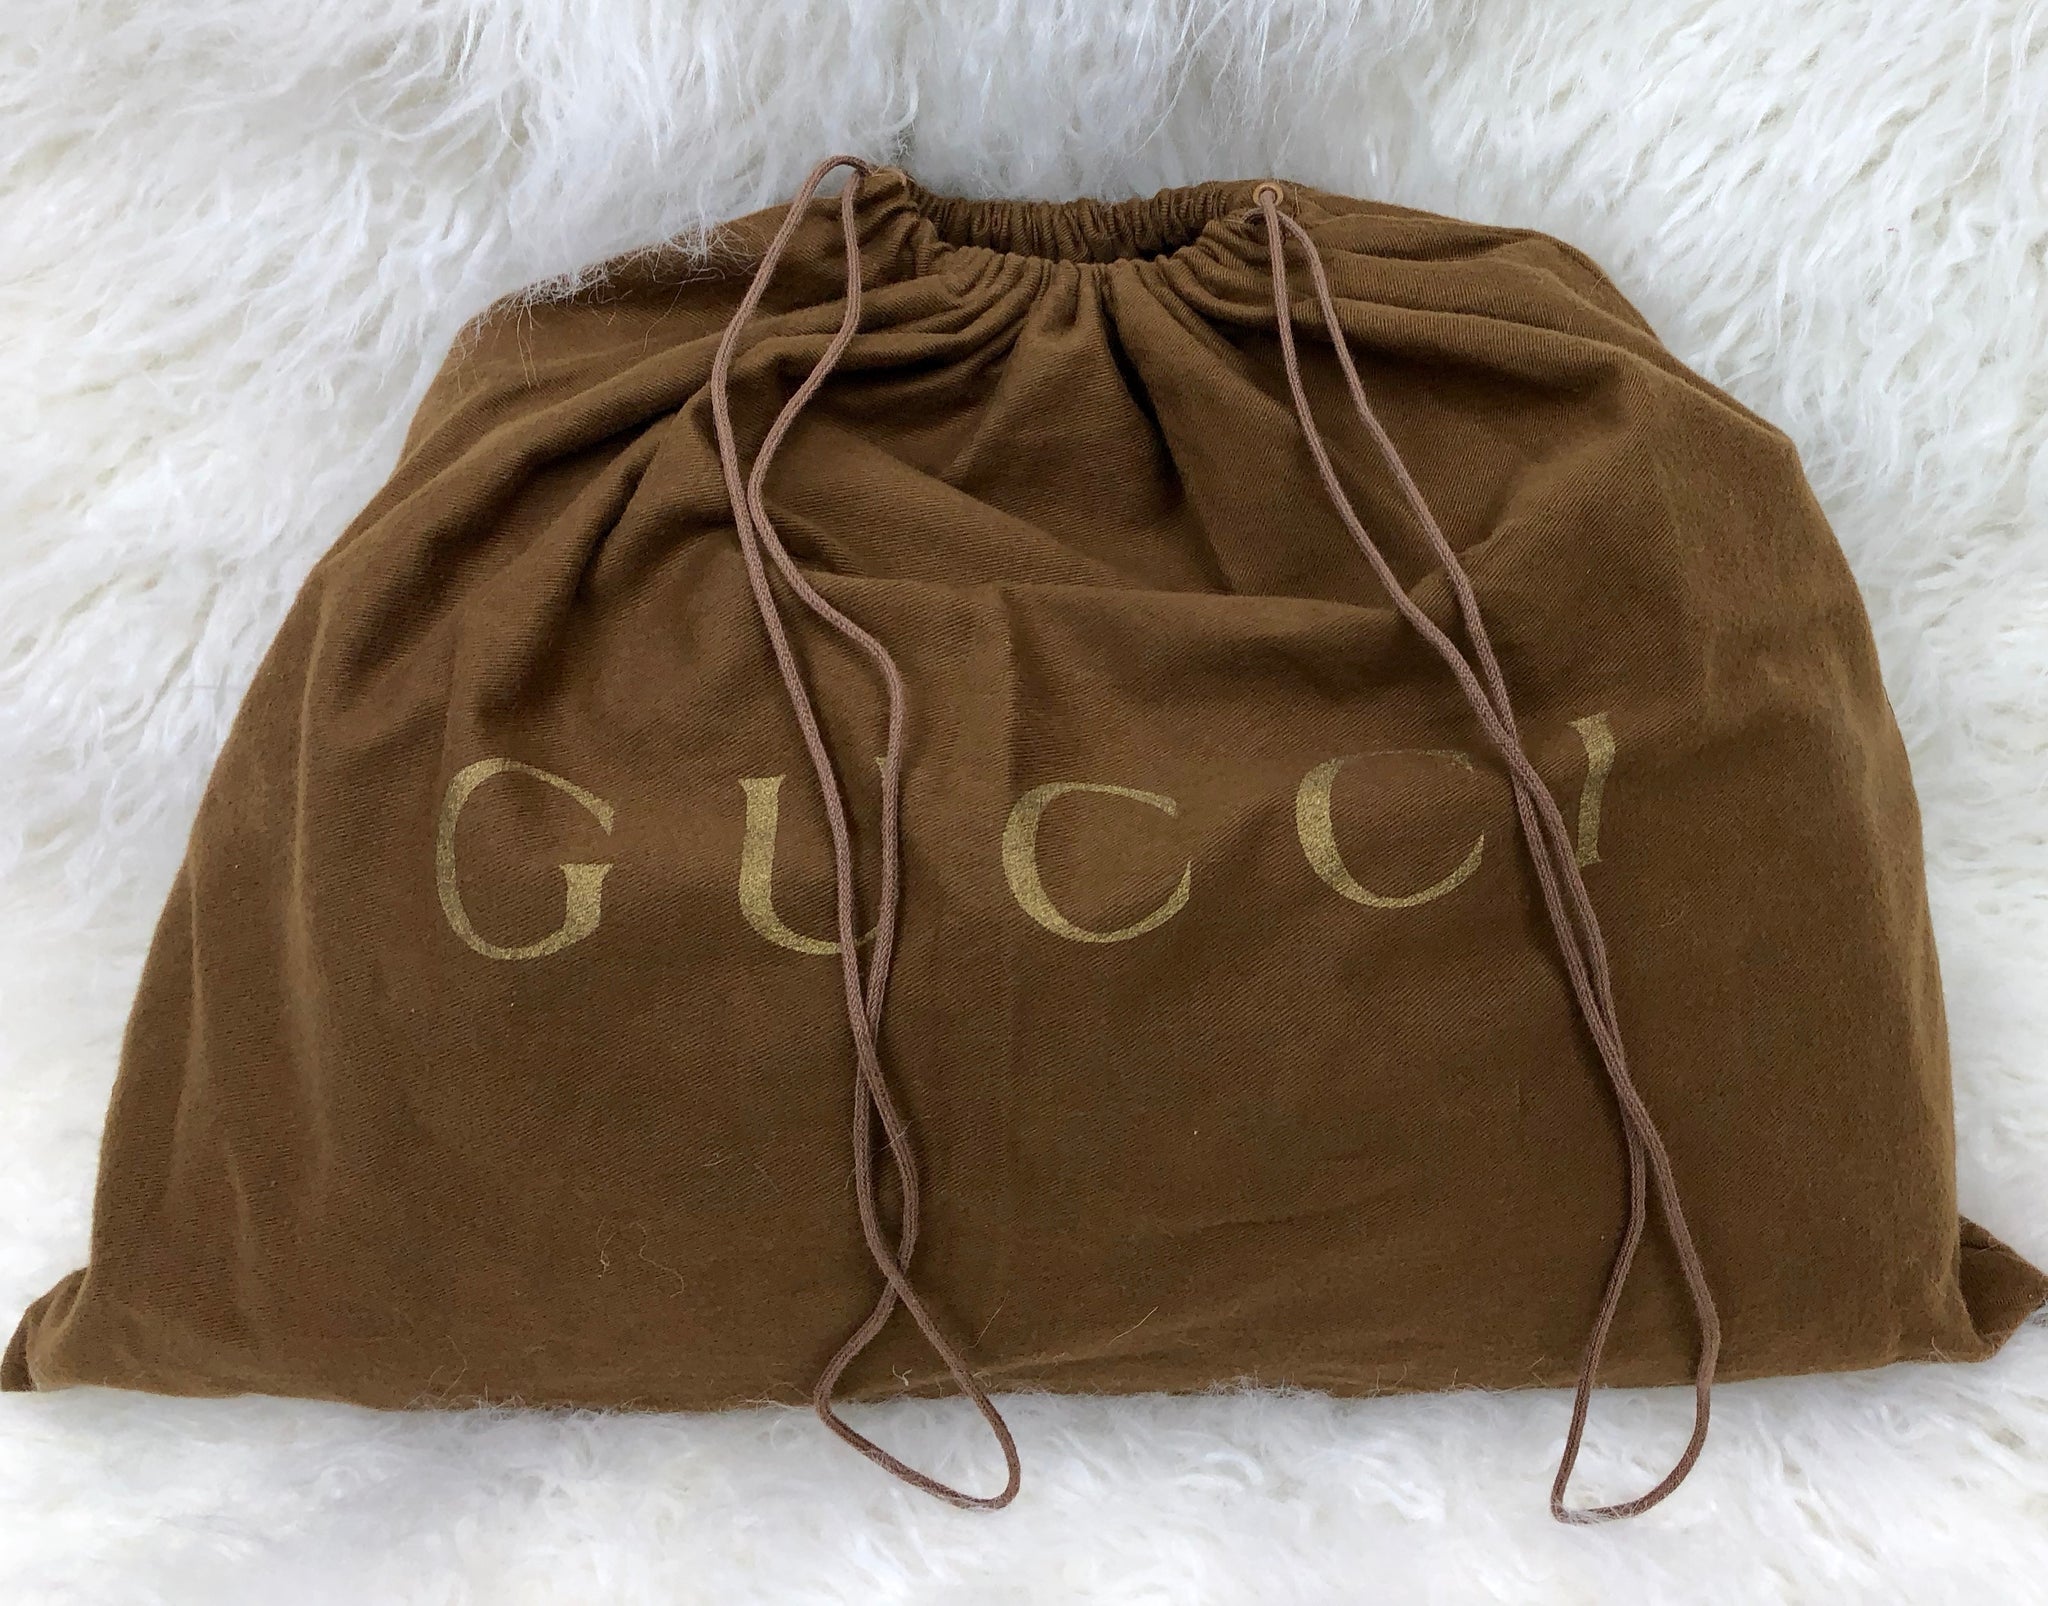 GUCCI Supreme Shoulder Bag